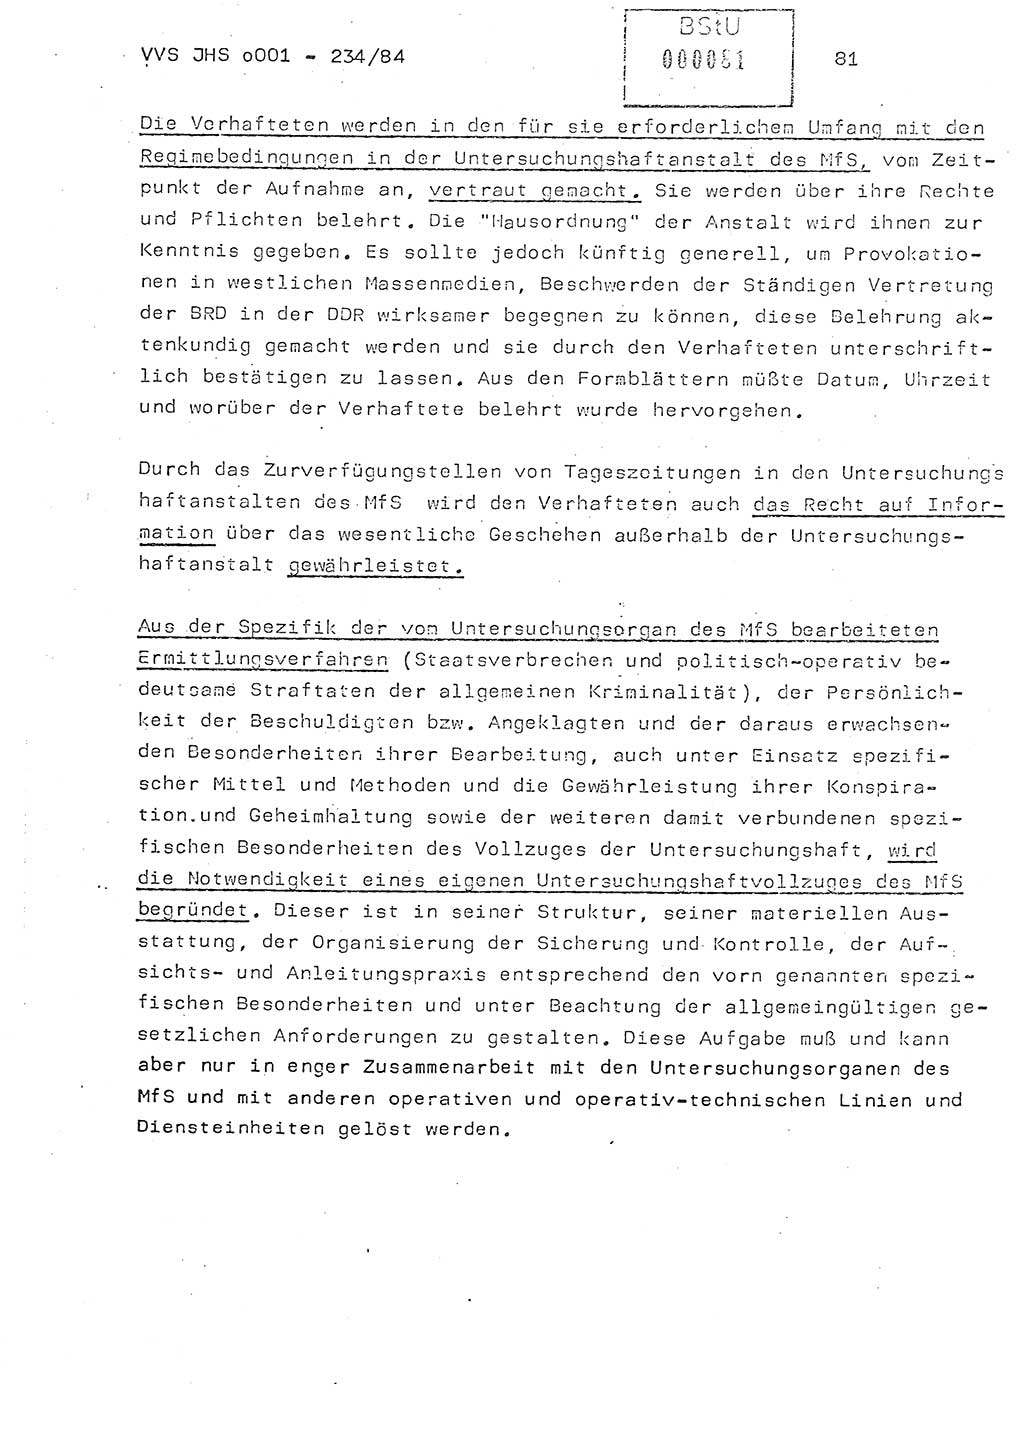 Dissertation Oberst Siegfried Rataizick (Abt. ⅩⅣ), Oberstleutnant Volkmar Heinz (Abt. ⅩⅣ), Oberstleutnant Werner Stein (HA Ⅸ), Hauptmann Heinz Conrad (JHS), Ministerium für Staatssicherheit (MfS) [Deutsche Demokratische Republik (DDR)], Juristische Hochschule (JHS), Vertrauliche Verschlußsache (VVS) o001-234/84, Potsdam 1984, Seite 81 (Diss. MfS DDR JHS VVS o001-234/84 1984, S. 81)